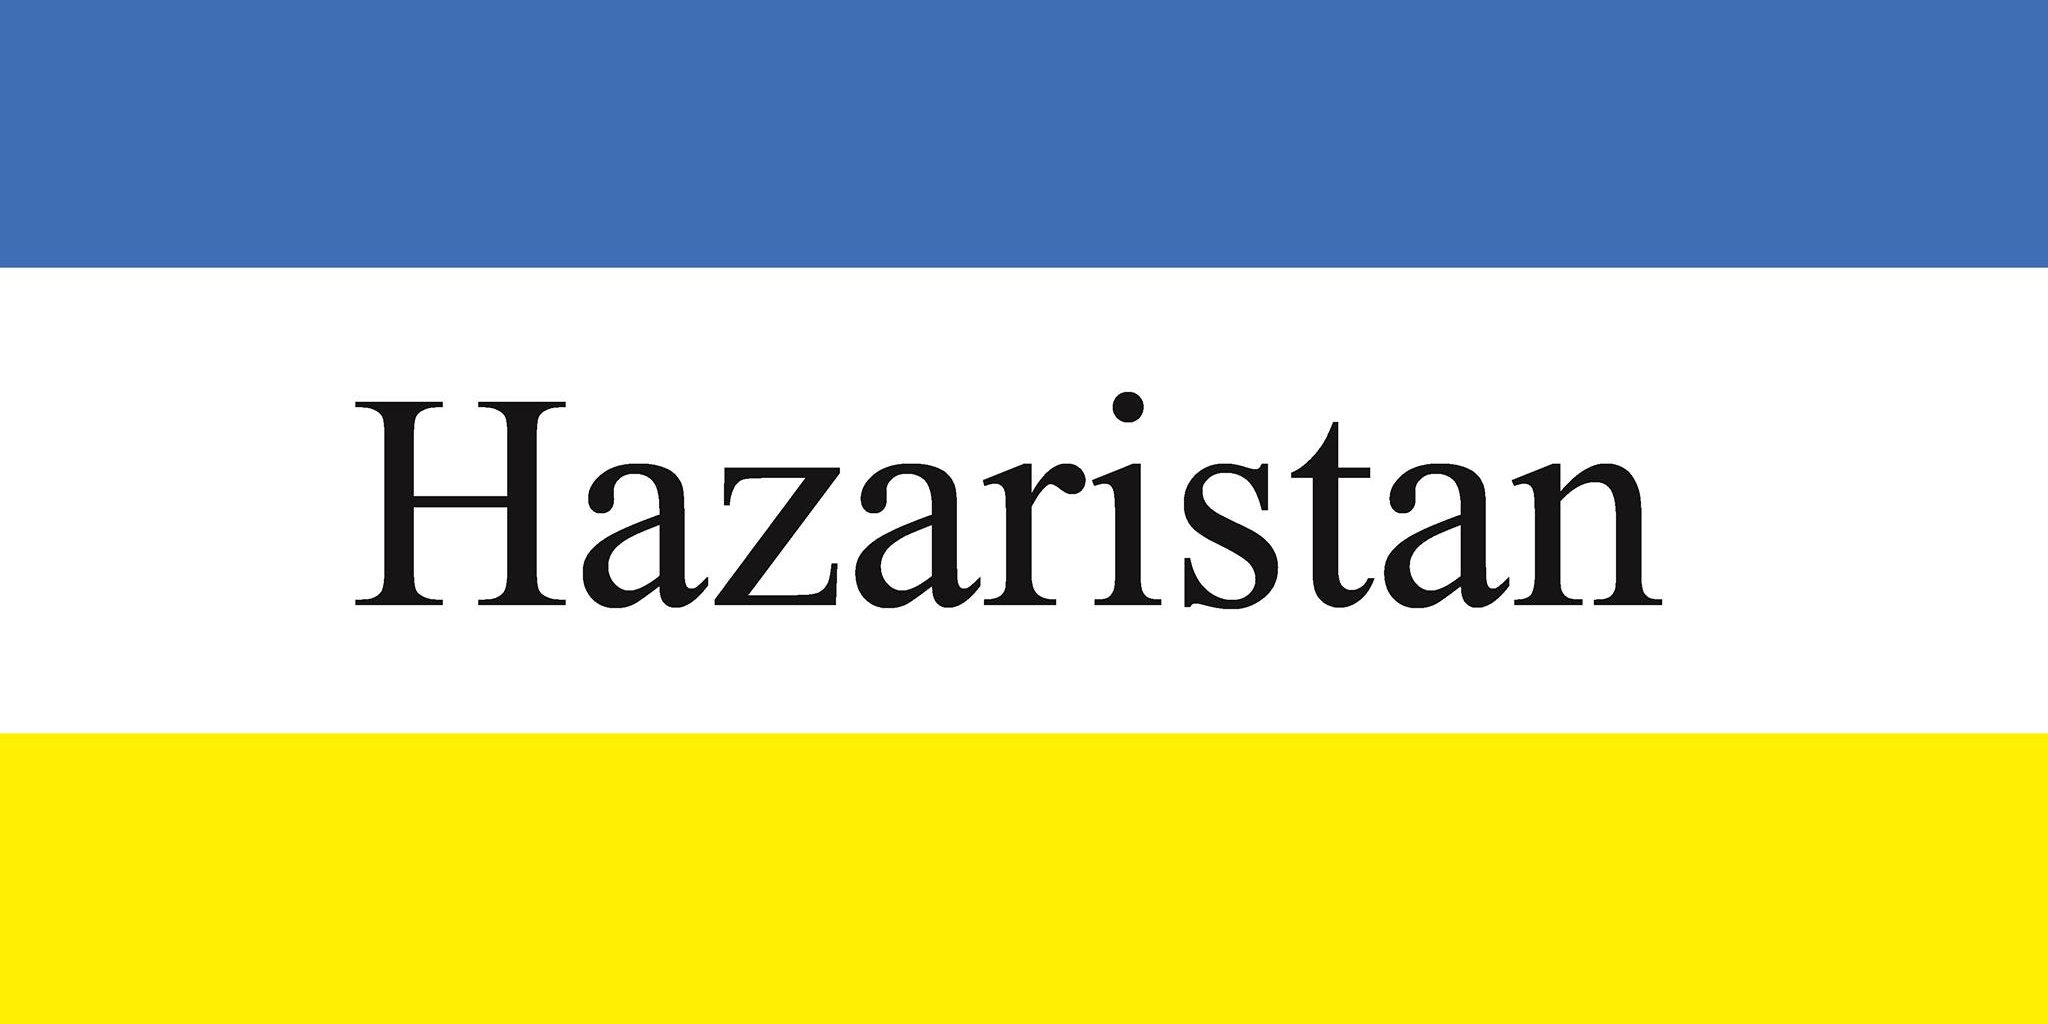 Flag of Hazaristan